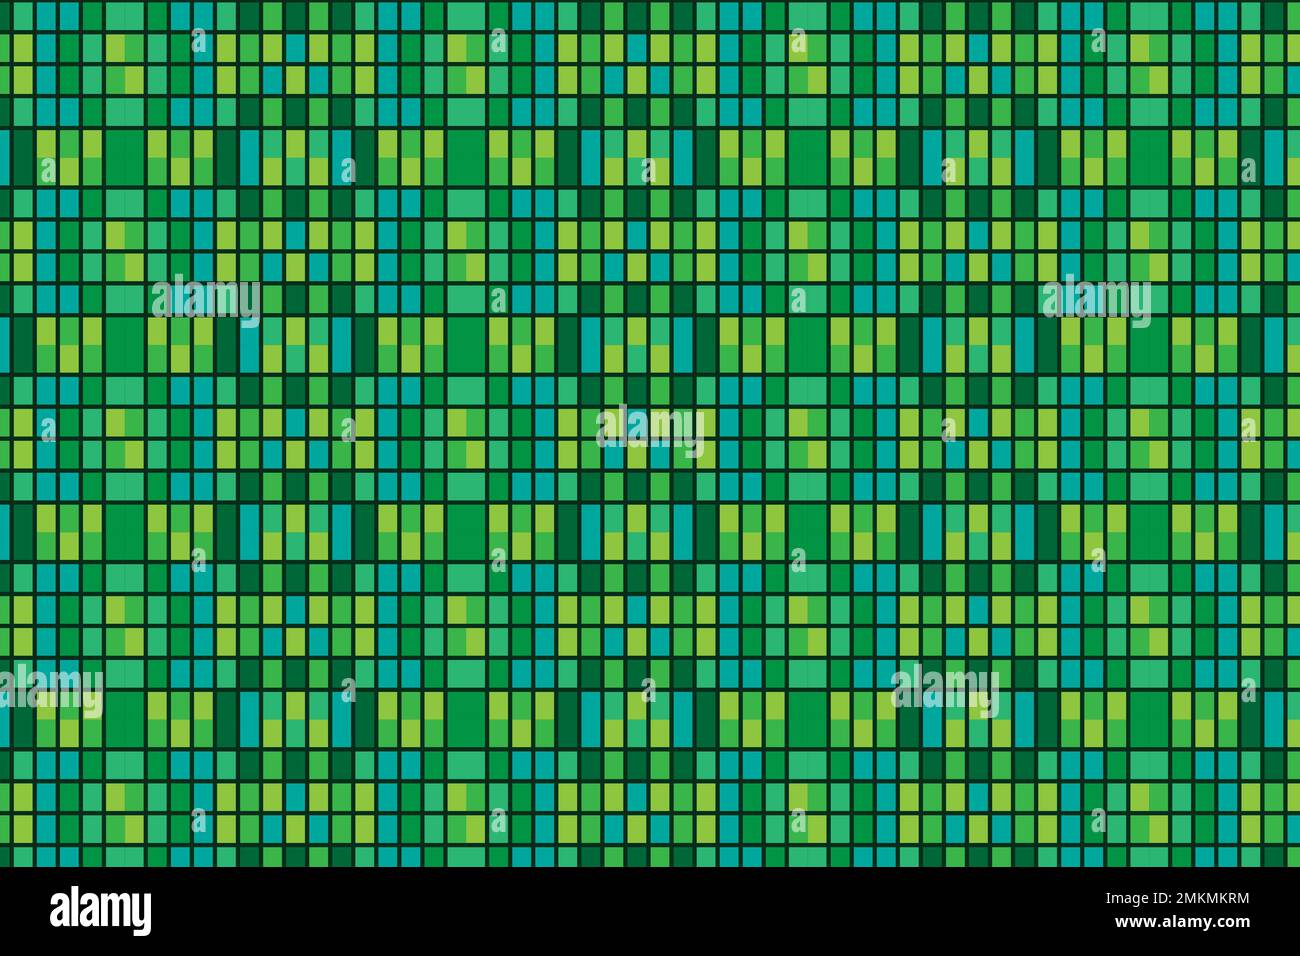 Grünes und gelbes Pixelbild nahtloses Muster Hintergrunddesign, kleine Blöcke nahtloses Pixelmuster Stockfoto